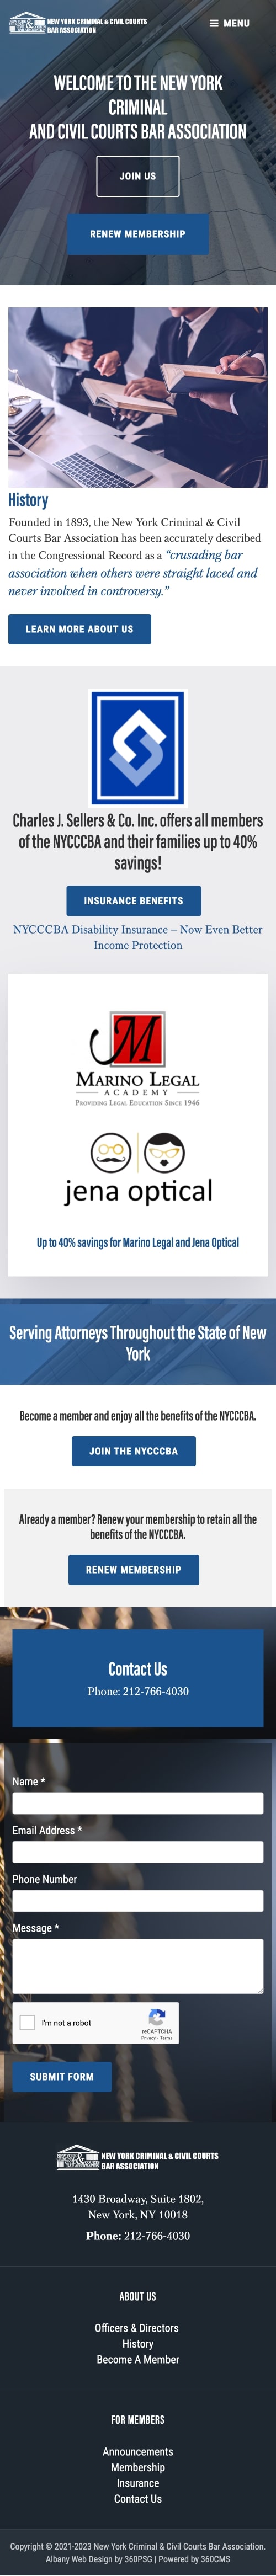 New York Criminal & Civil Courts Bar Association Website - Mobile